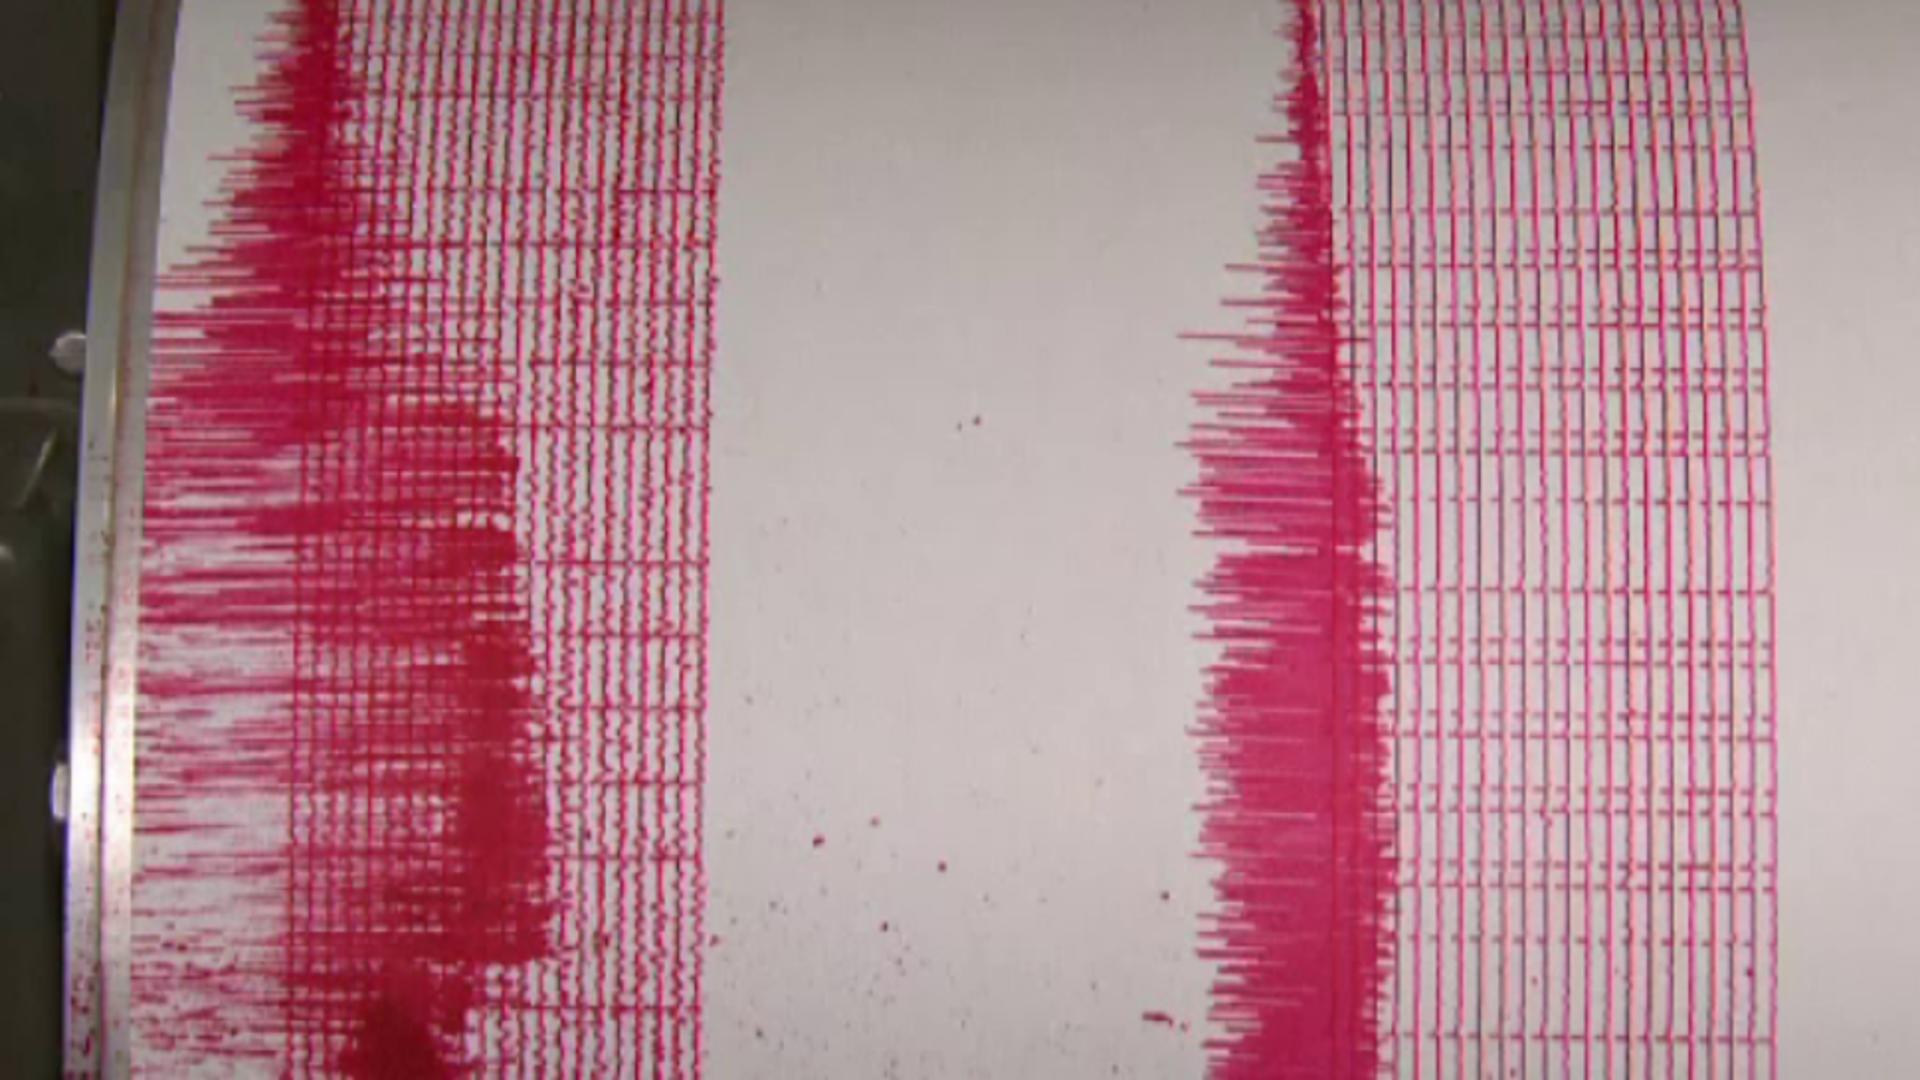 Șeful seismologilor avertizează: „S-a activat această falie la est de Arad. Este posibil să apară și pe alte falii niște cutremure mai mici” 